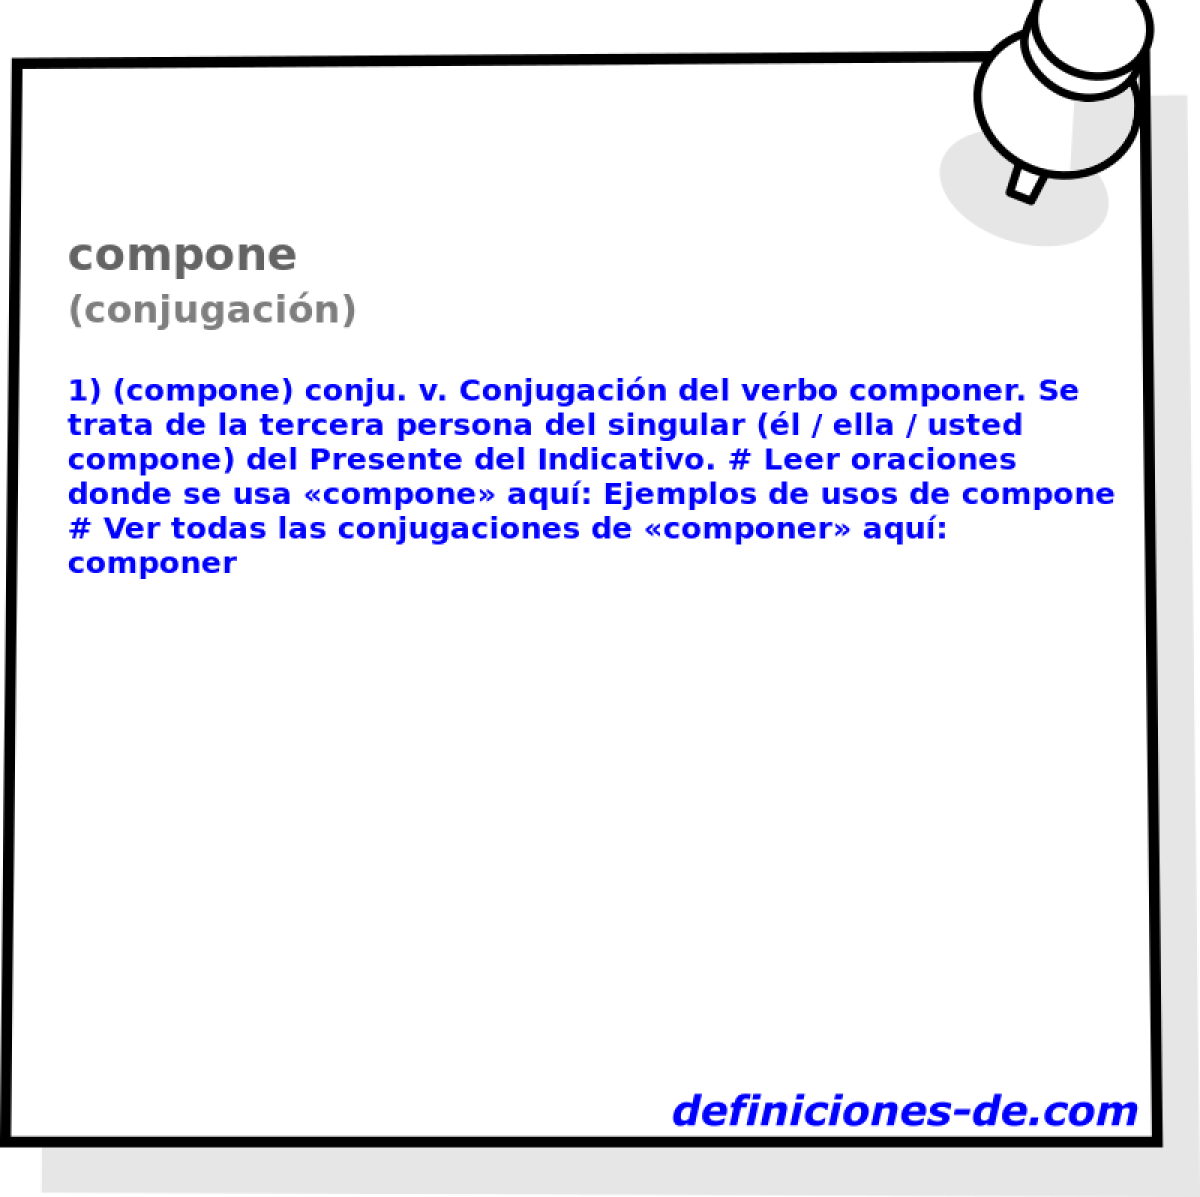 compone (conjugacin)